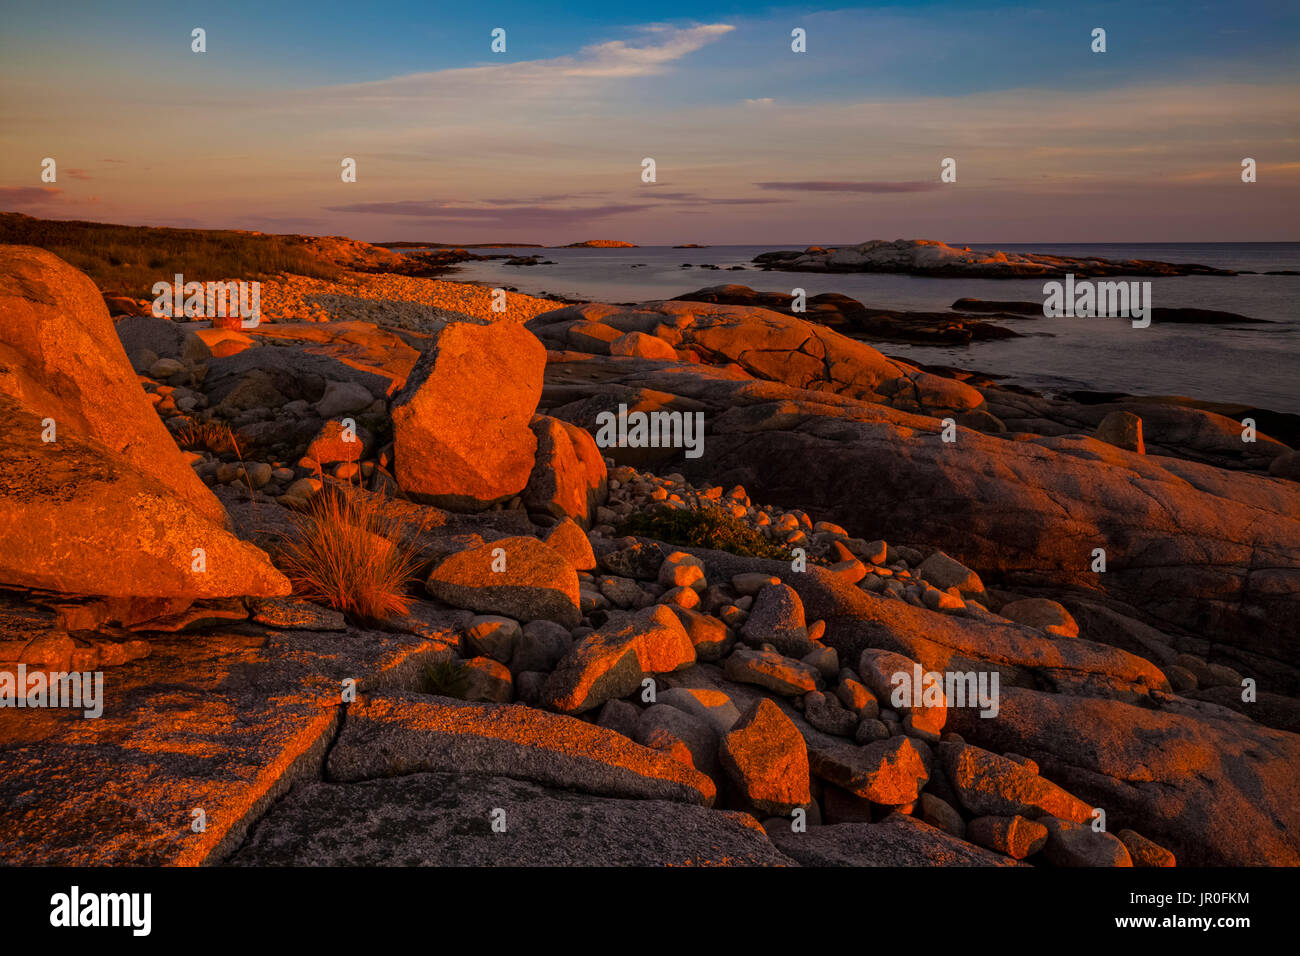 A lo largo de la cabeza alta sendero litoral al atardecer; Perspectiva, Nova Scotia, Canadá Foto de stock